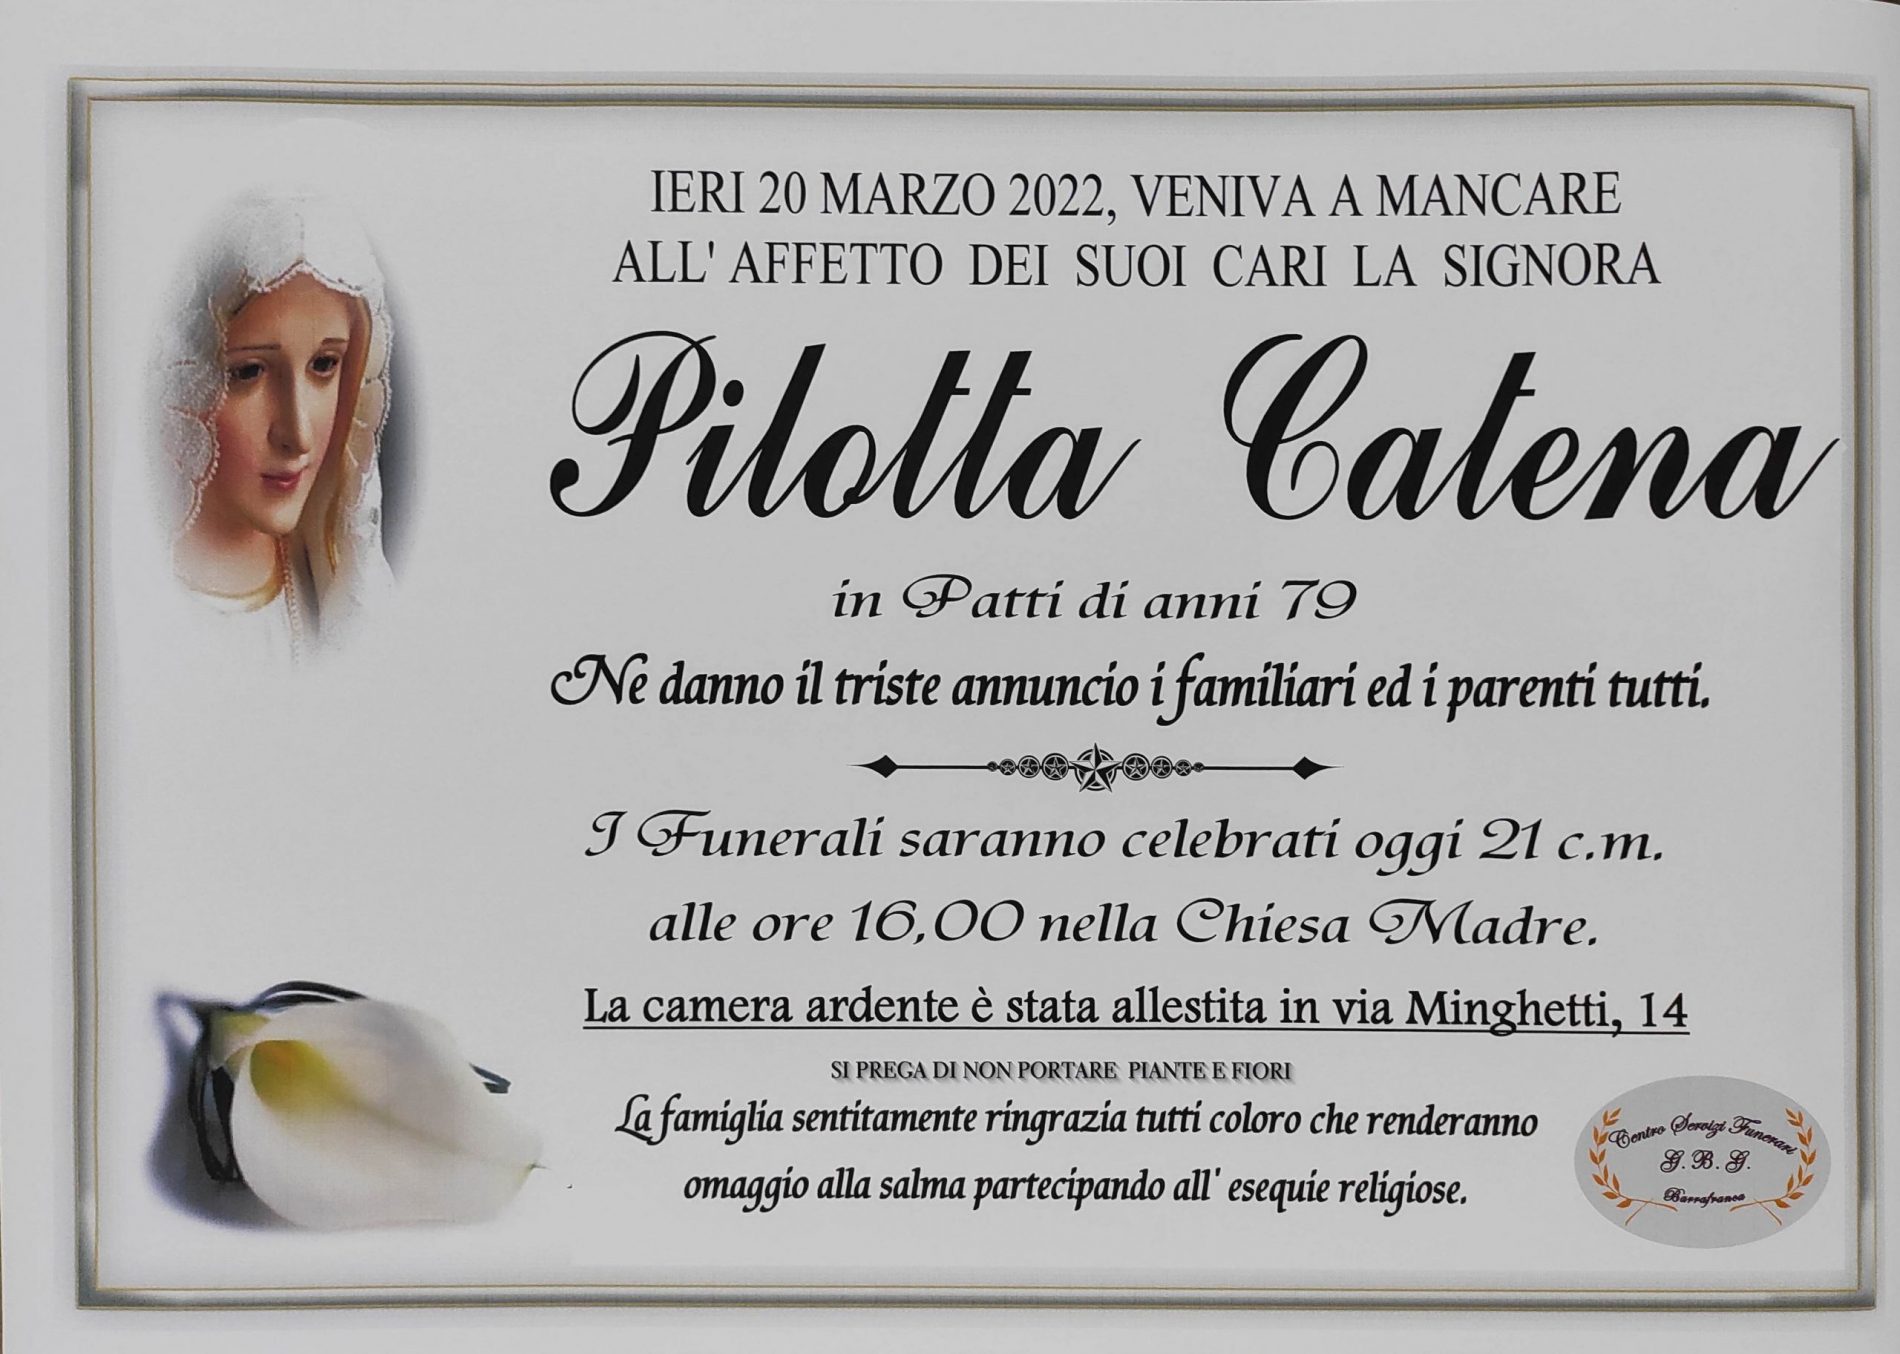 Annuncio servizi funerari agenzia G.B.G. signora Pilotta Catena in Patti di anni 79